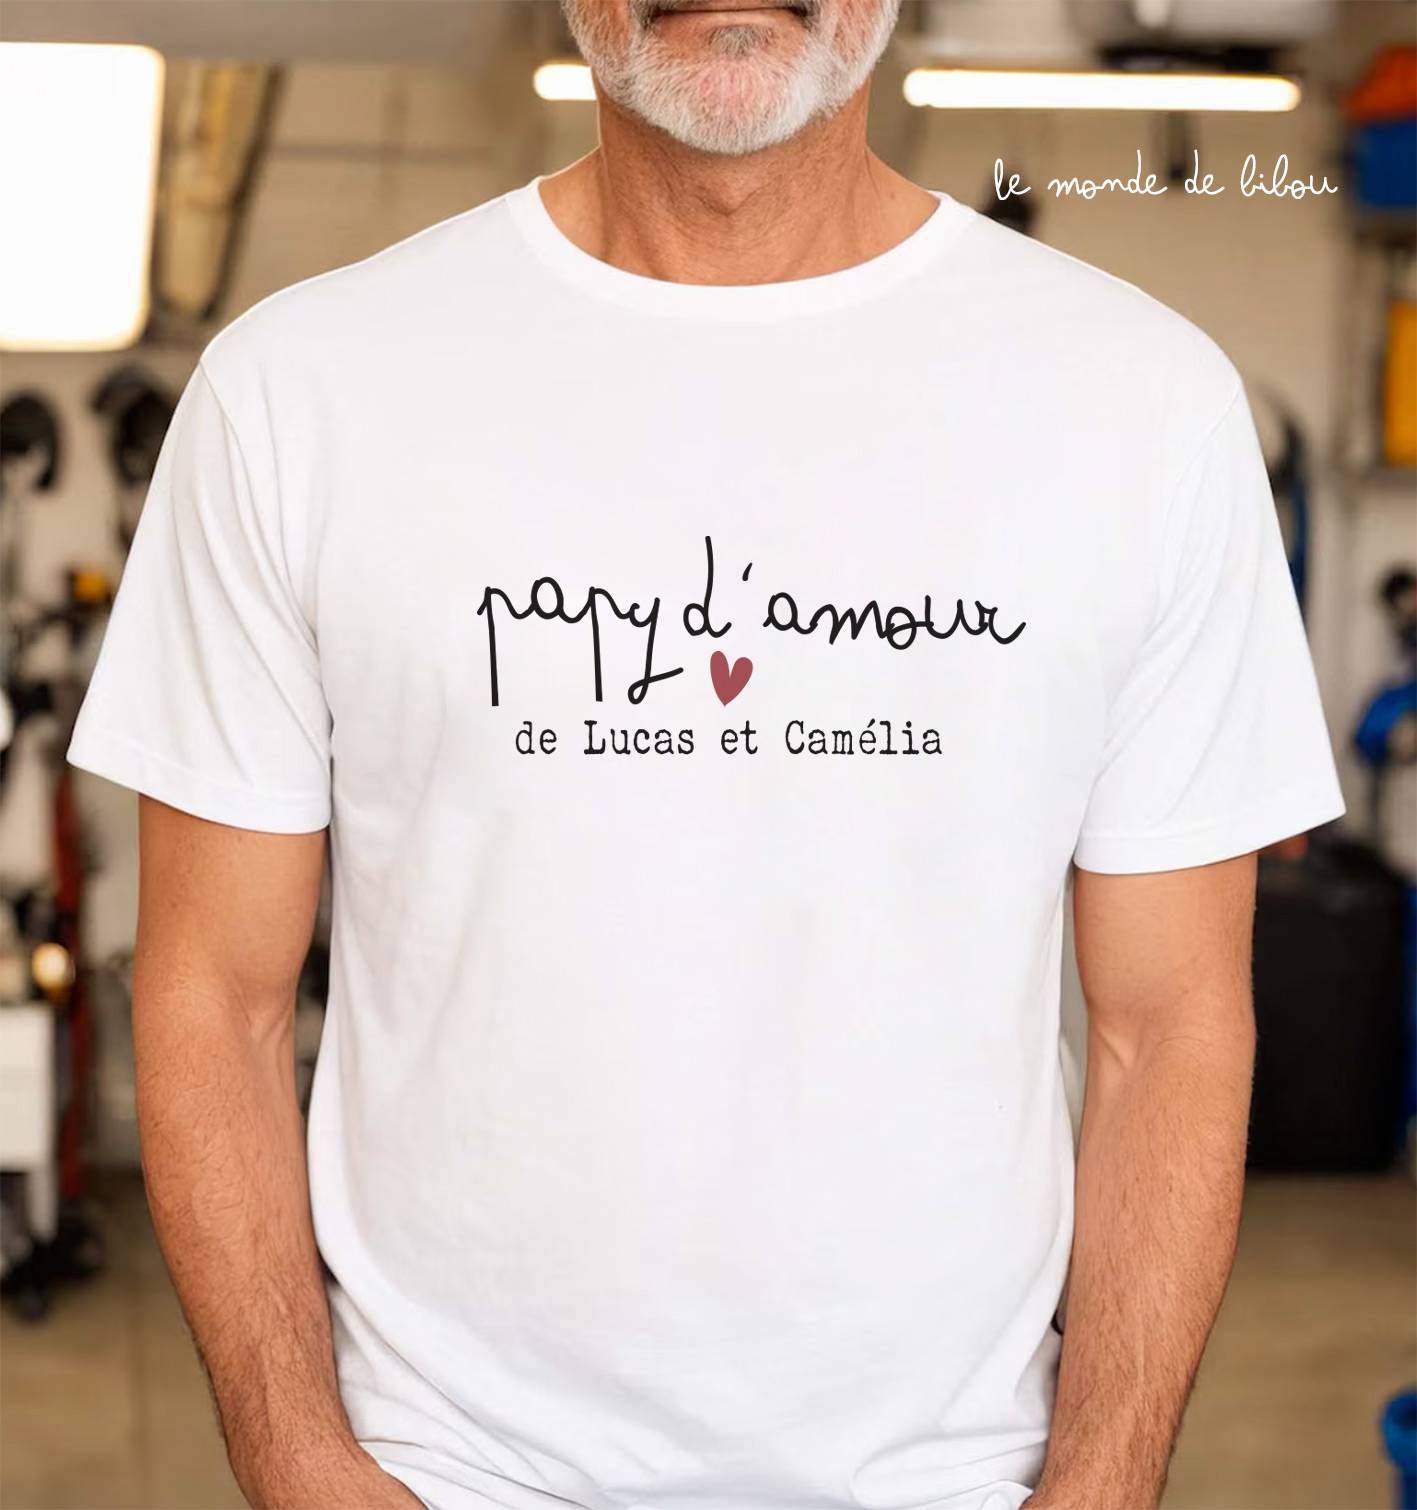 Cette Mamie Géniale T-shirt Personnalisé, Annonce De Grossesse